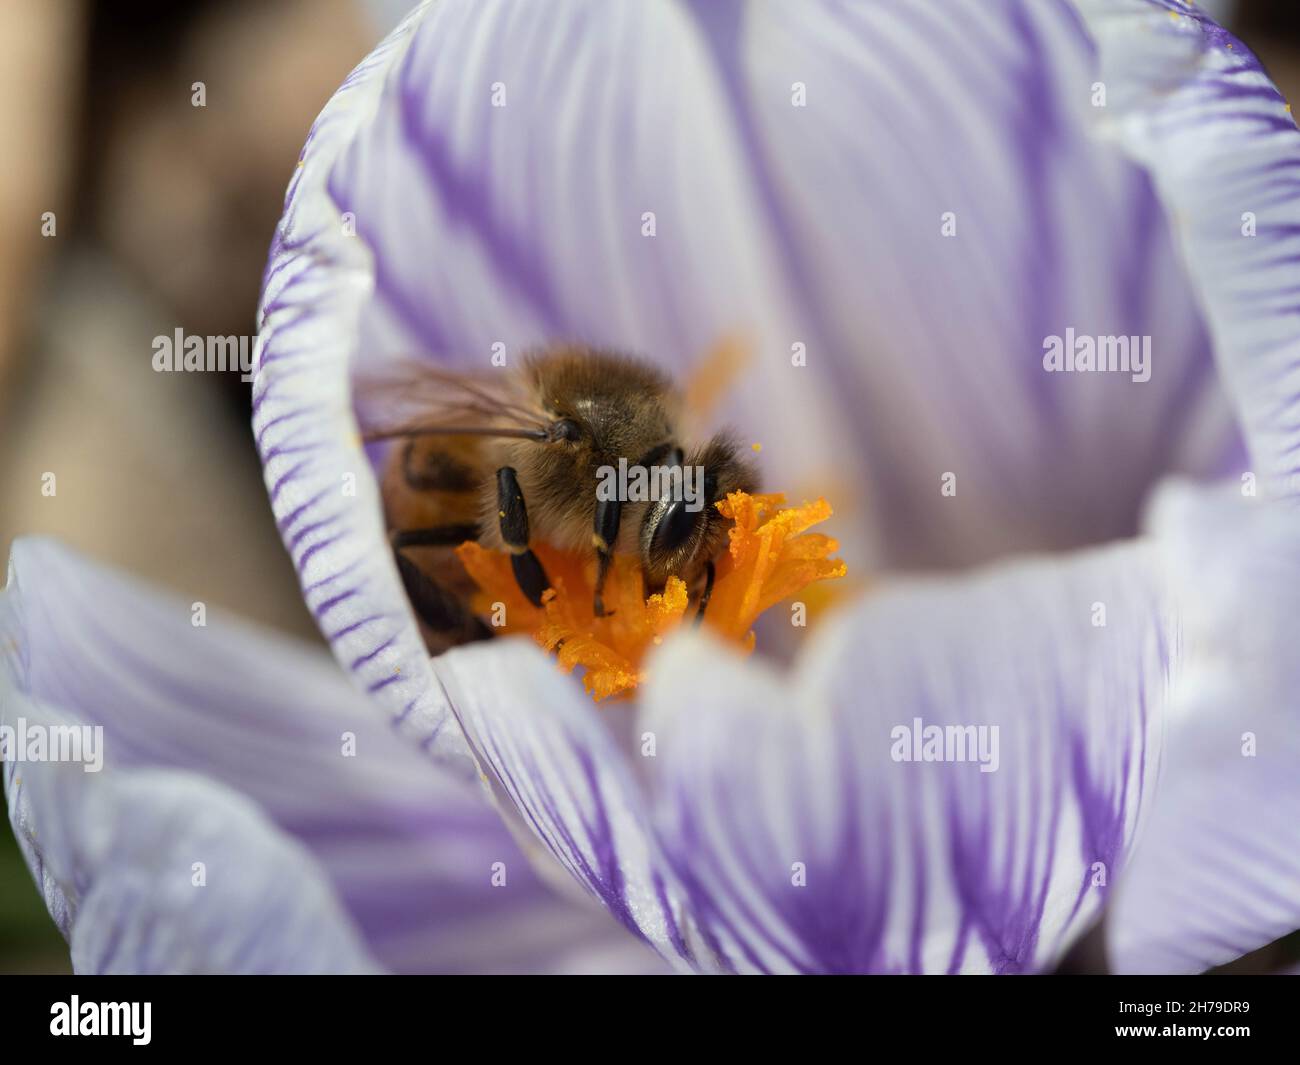 Honey bee on pickwick crocus Stock Photo